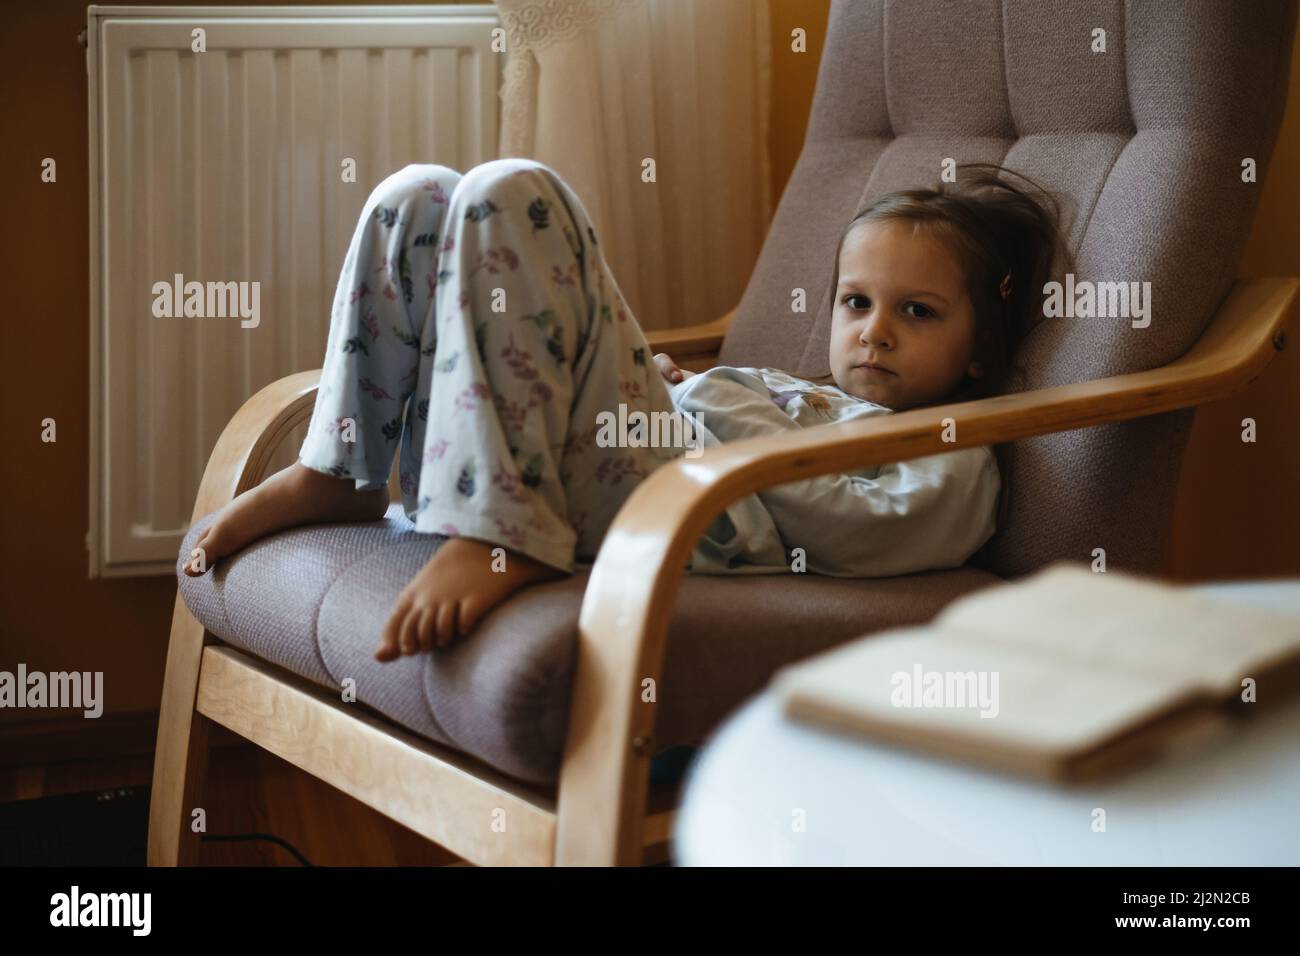 Gelangweilt traurig Kleinkind Kind einsam zu Hause sitzen auf Sessel. Trauriger, entspannter, ehrlicher Junge zu Hause in gemütlicher, warmer Atmosphäre. Mädchen denken, träumen. Kopieren Stockfoto